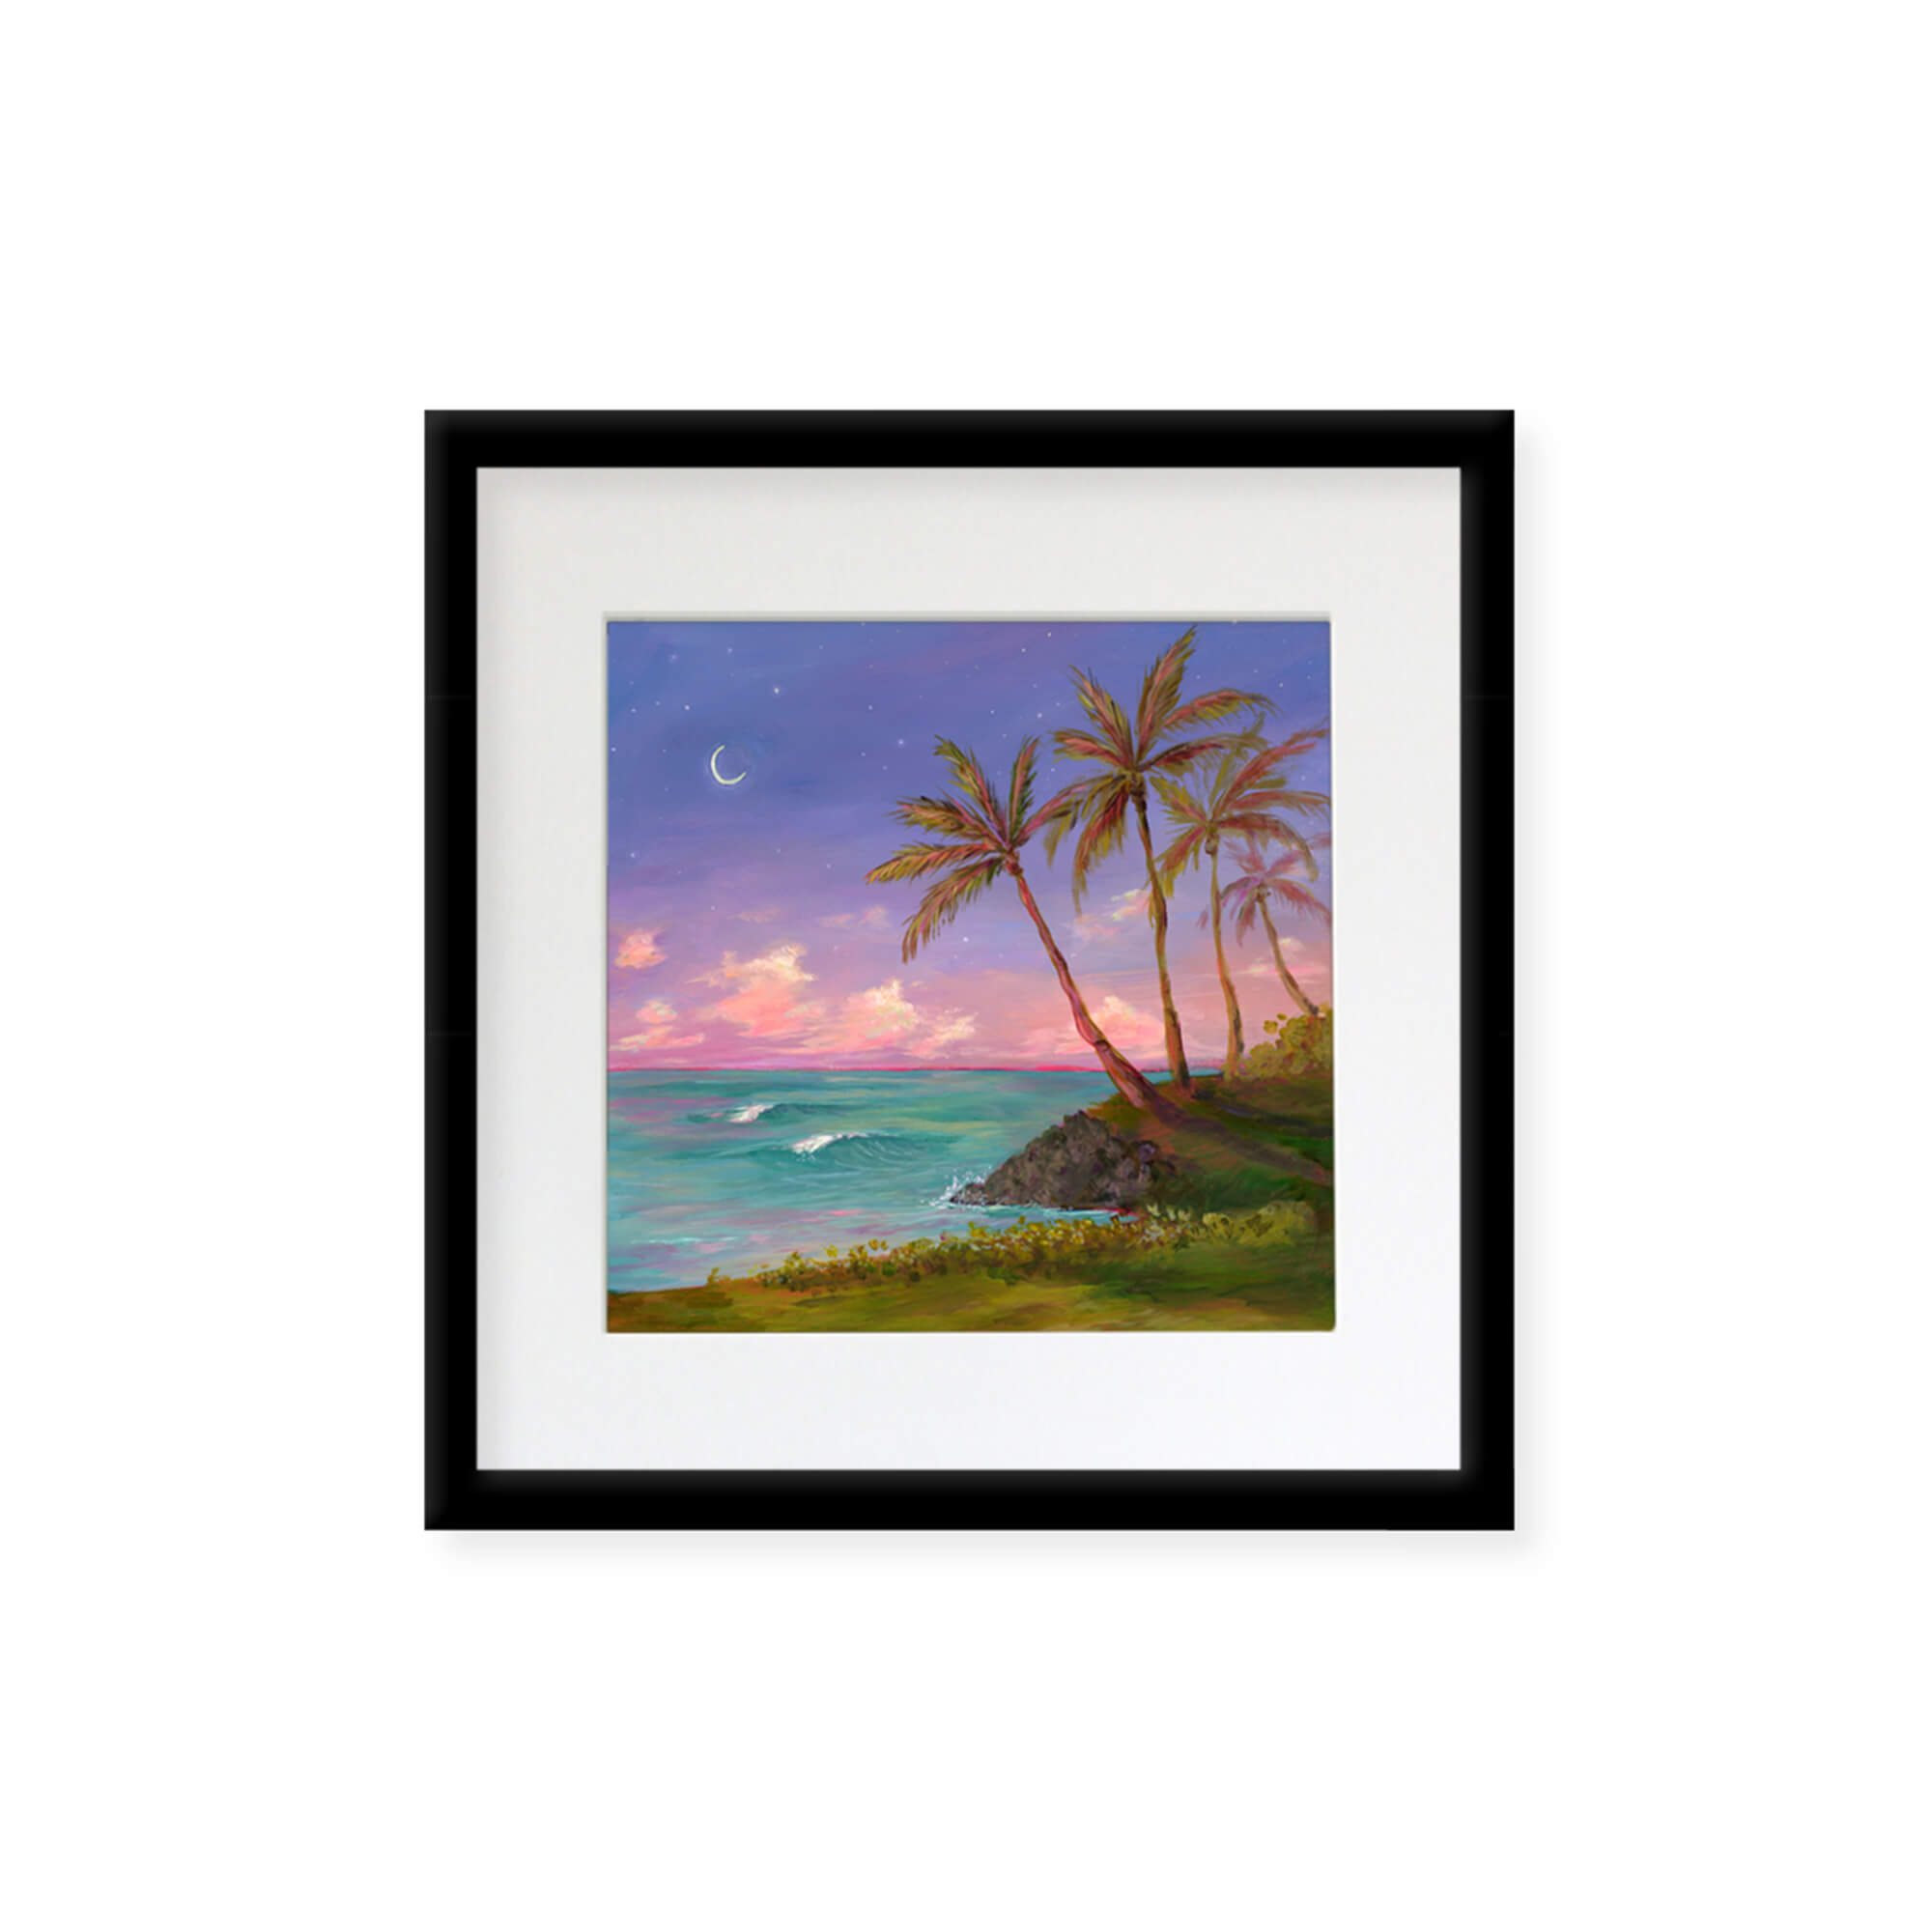 Pastel hued seascape by Hawaii artist Lindsay Wilkins